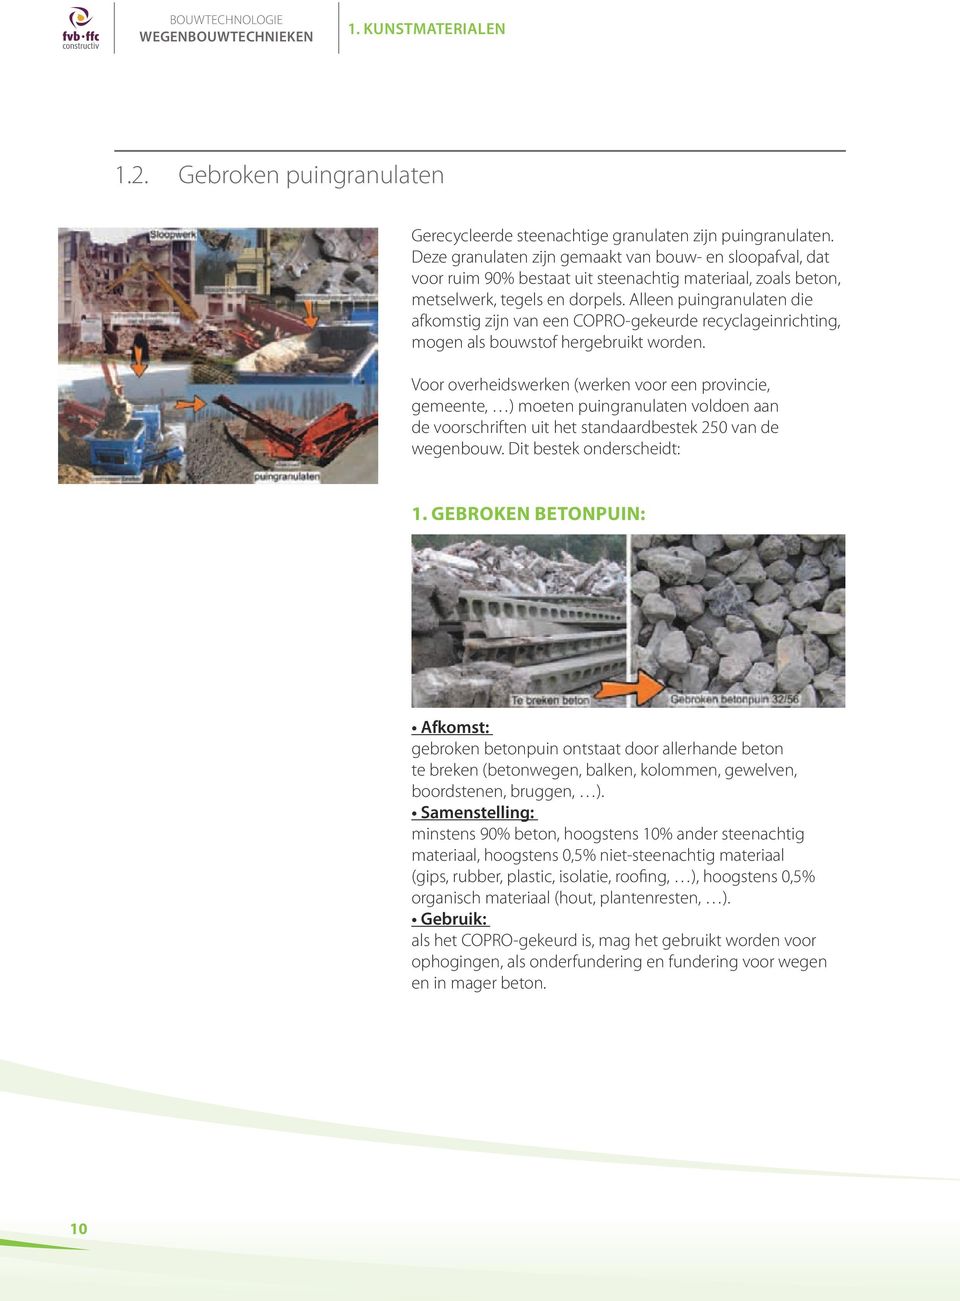 Alleen puingranulaten die afkomstig zijn van een COPRO-gekeurde recyclageinrichting, mogen als bouwstof hergebruikt worden.